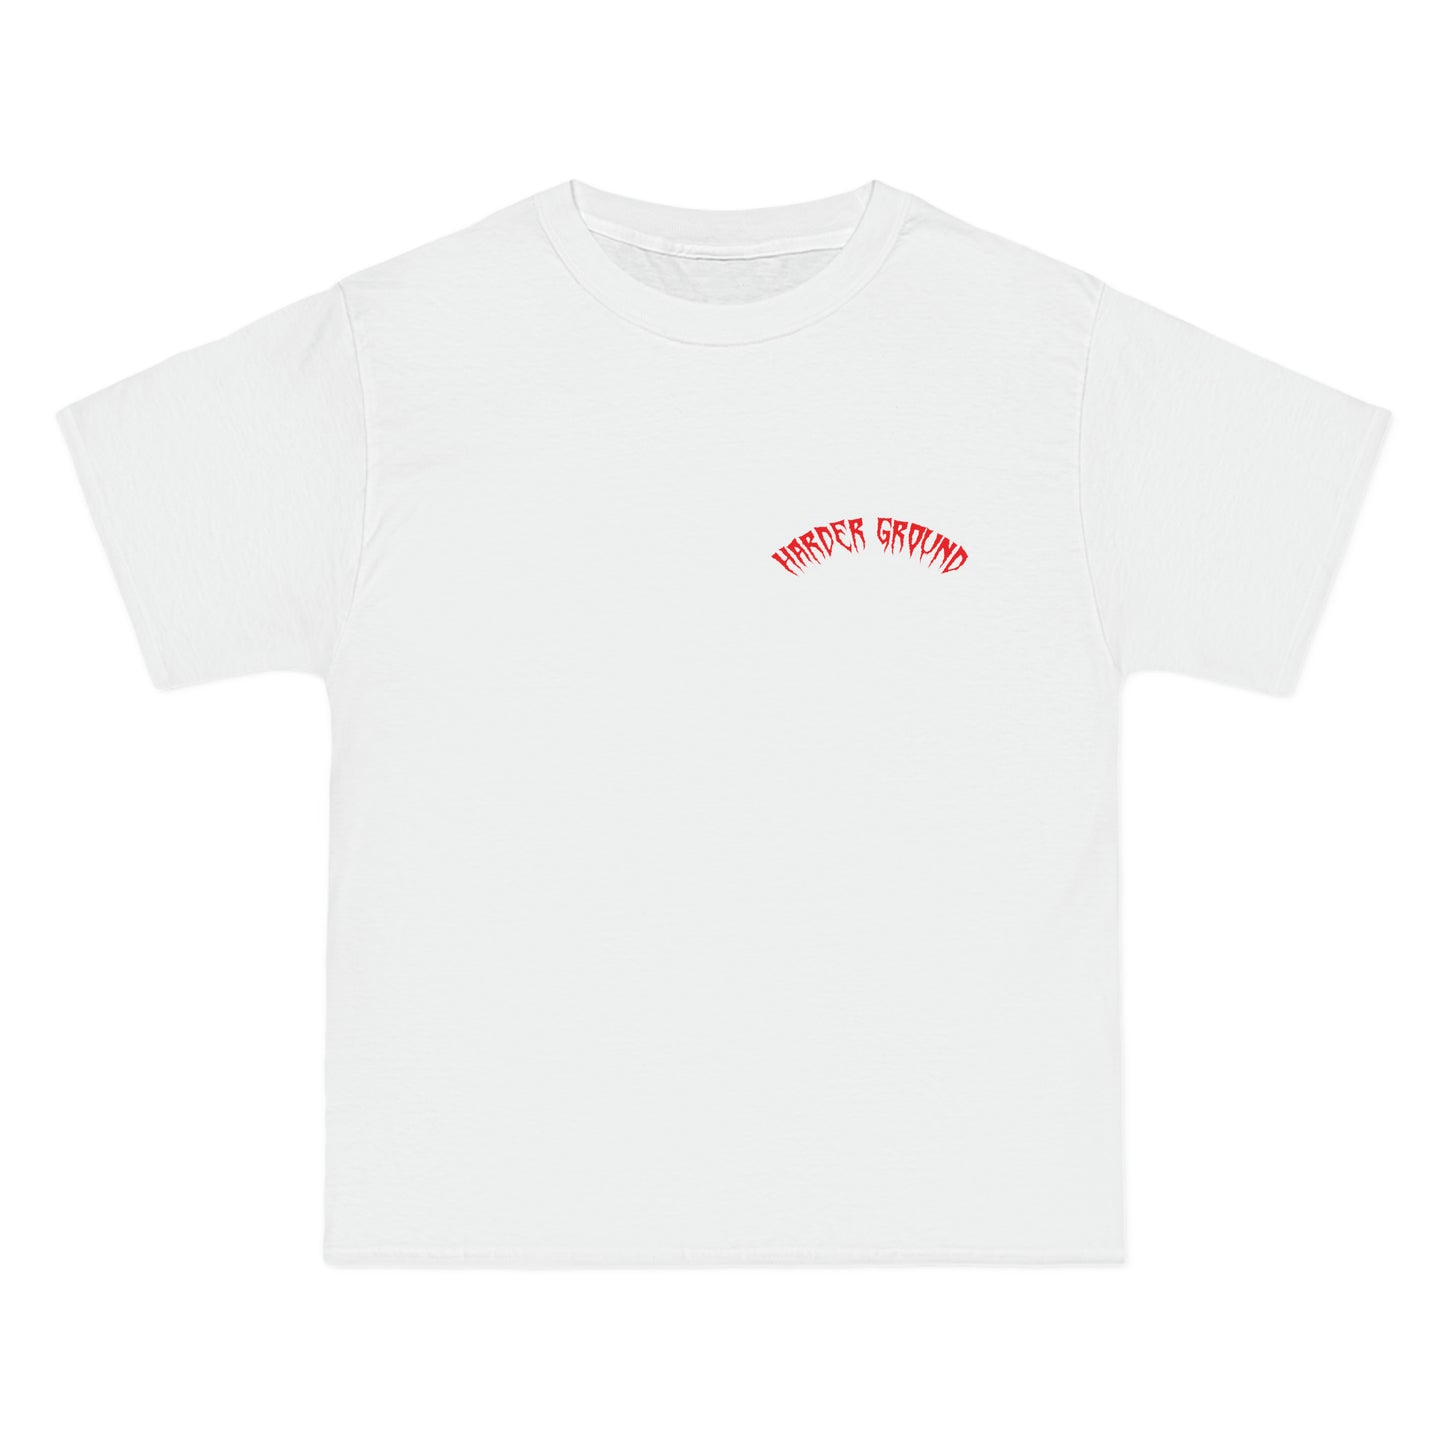 ITALY Harderground - Front & back logos - Beefy-T®  Short-Sleeve T-Shirt